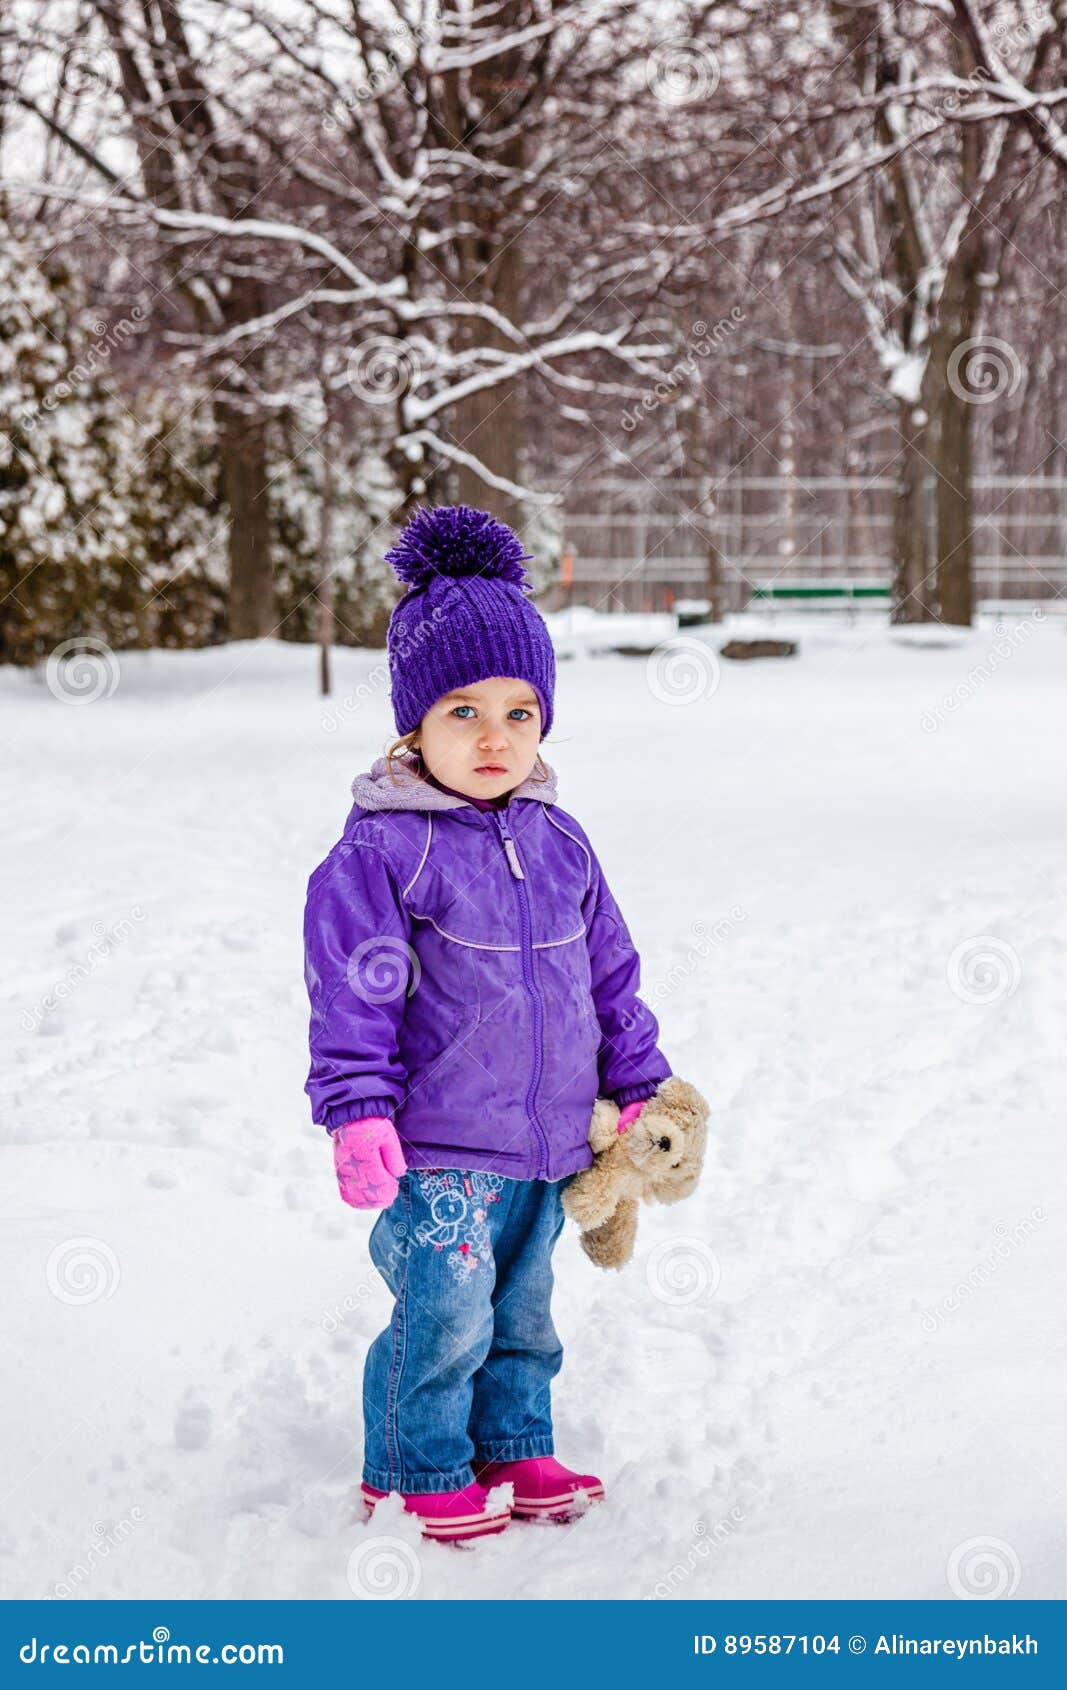 Niño Vestido Con Ropa De Invierno Que Se Divierten Afuera En La Nieve.  Fotos, retratos, imágenes y fotografía de archivo libres de derecho. Image  66632570, ropa nieve niños 